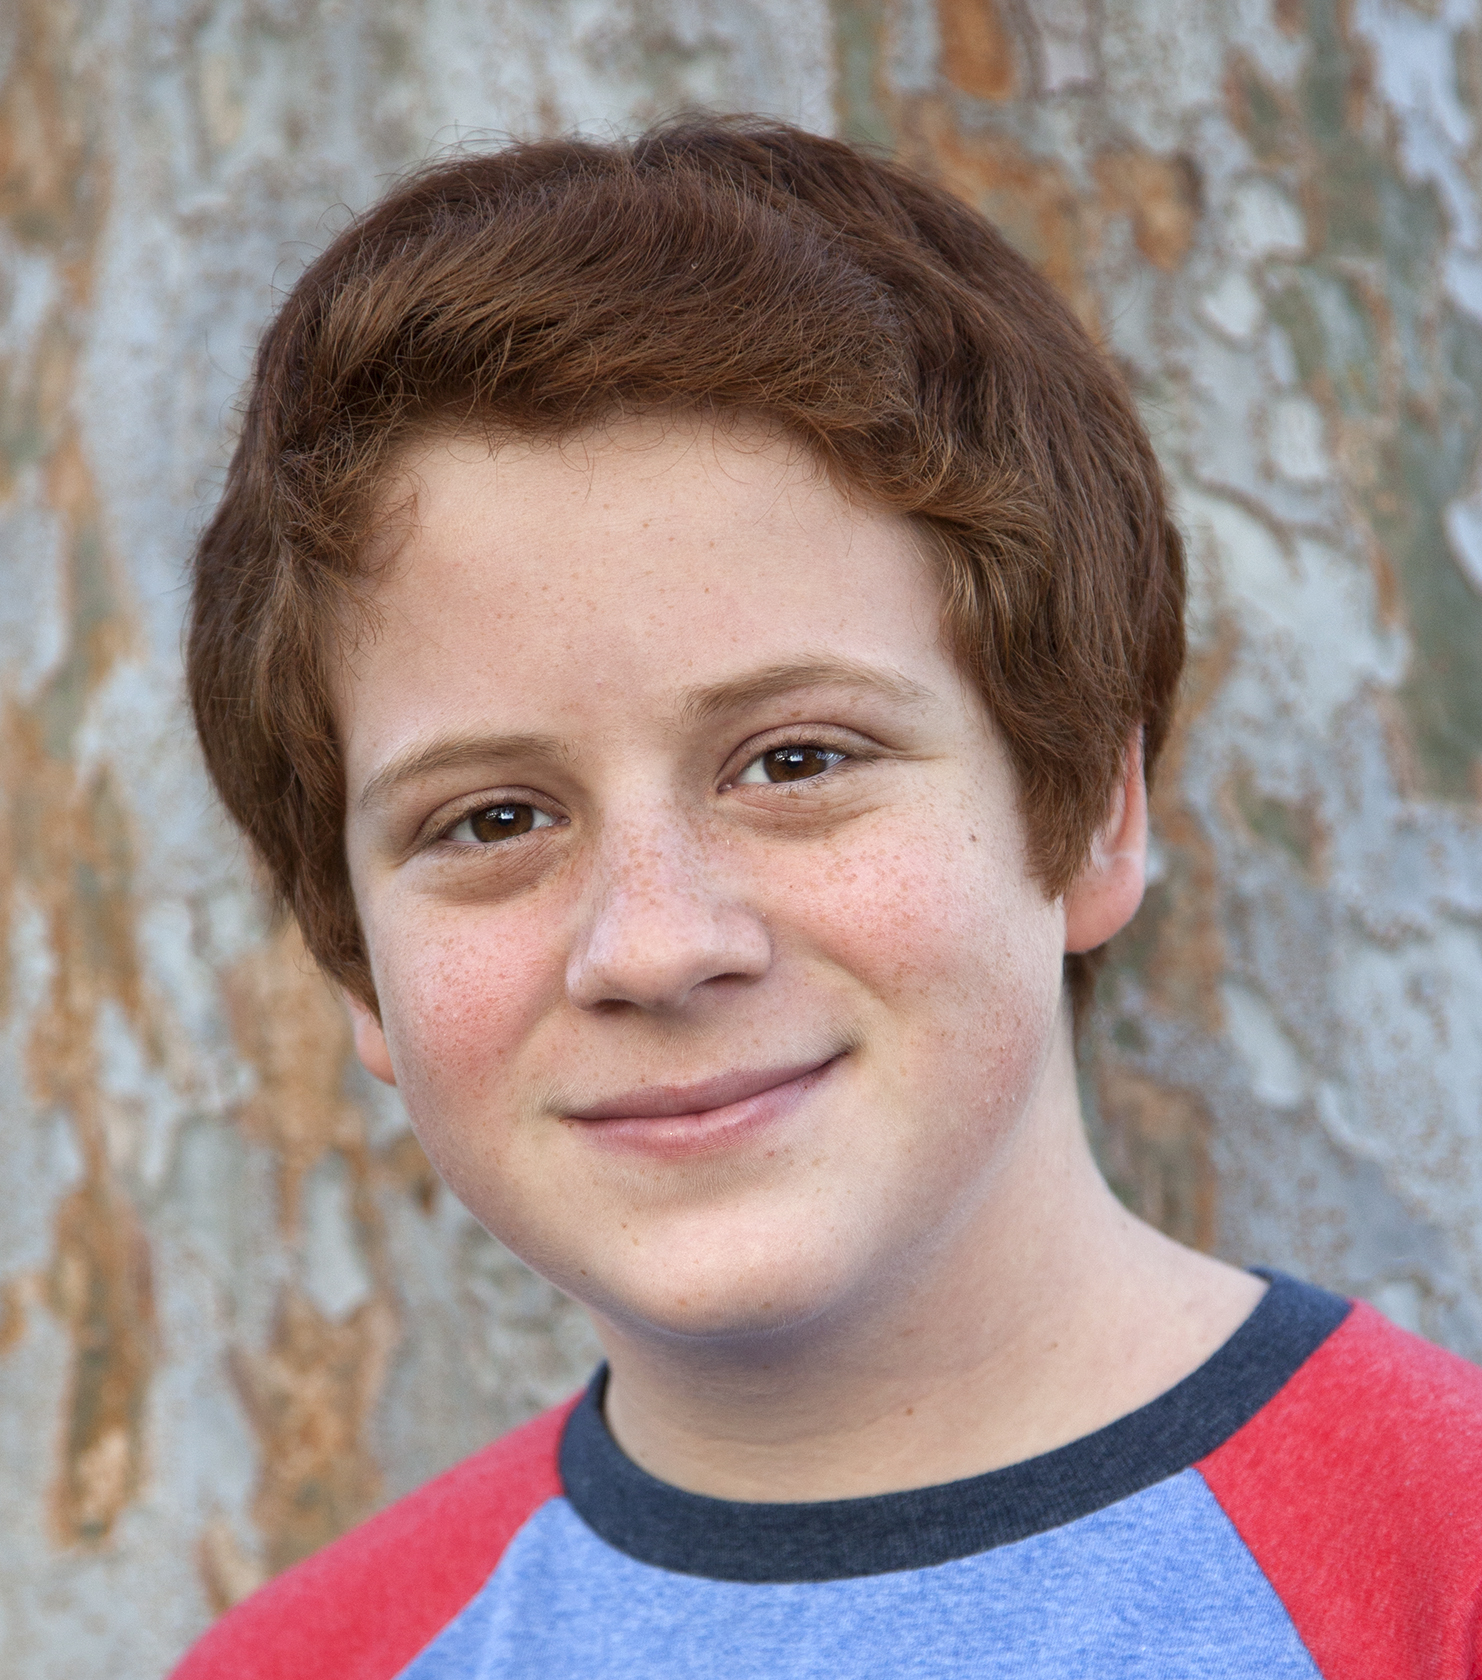 Skyler at age 14 12/15/2014.